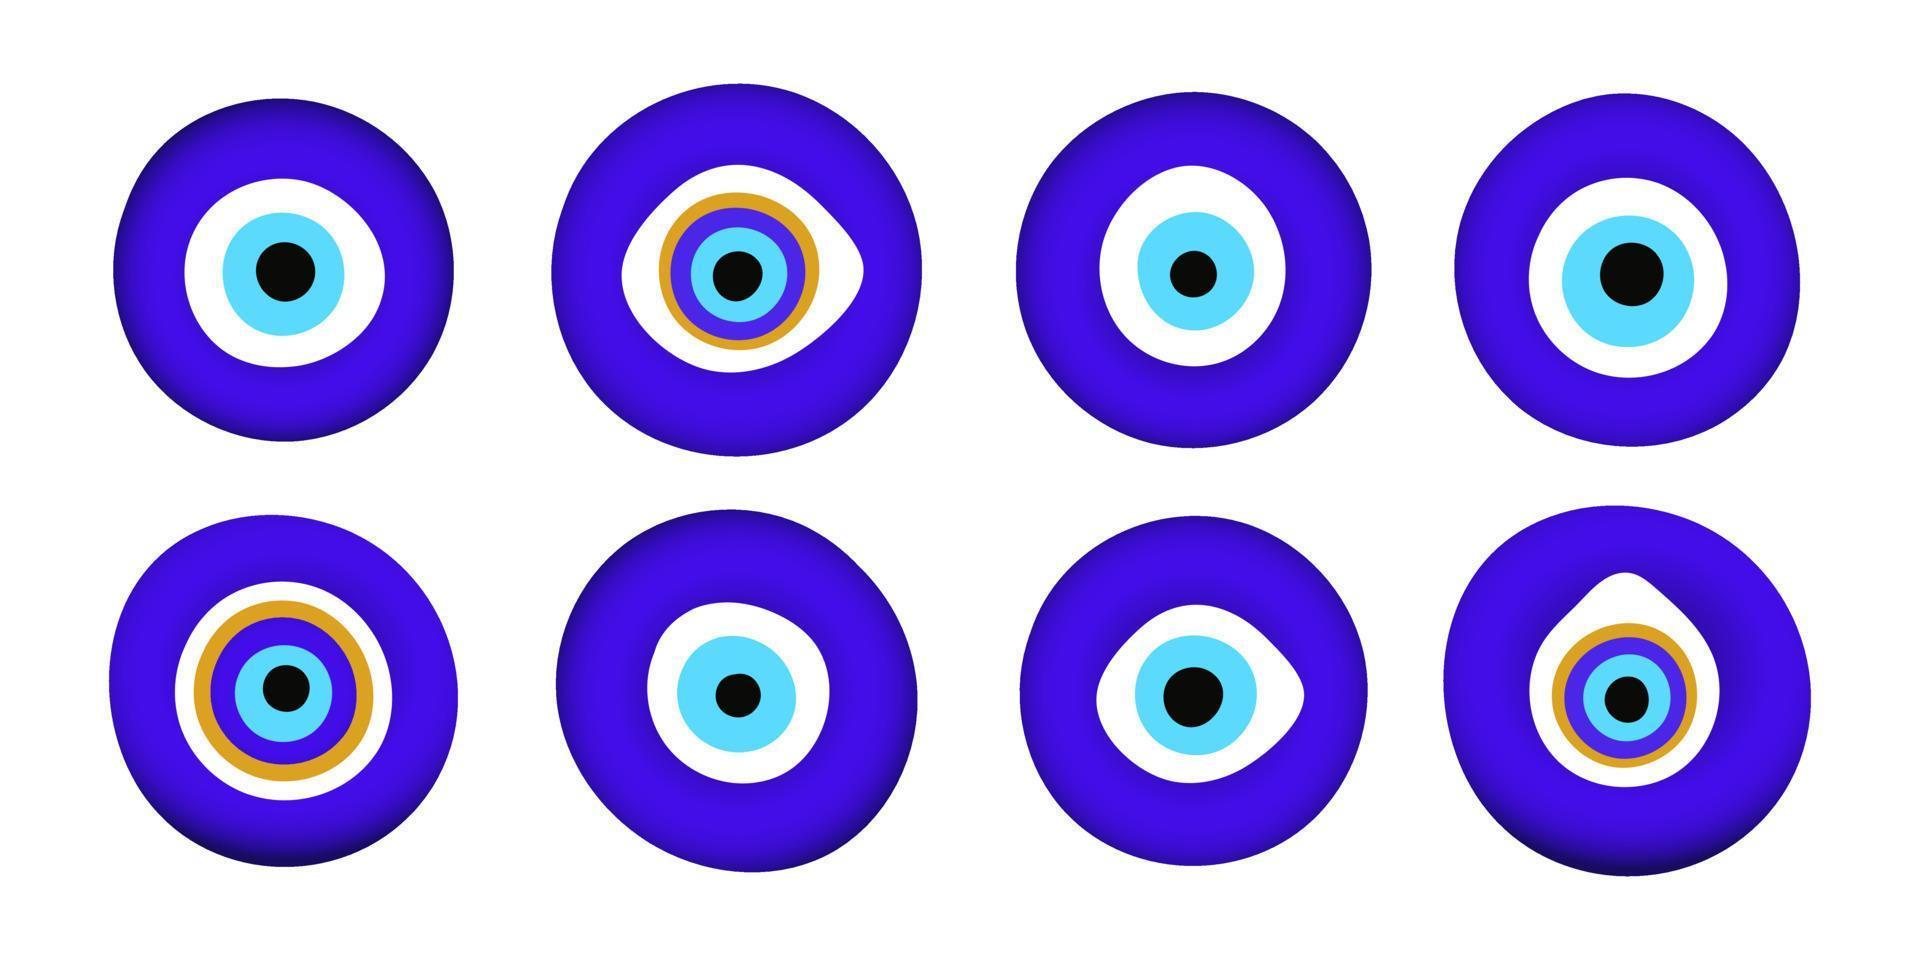 Blue oriental evil eye symbol amulet flat style design vector illustration set isolated on white background.